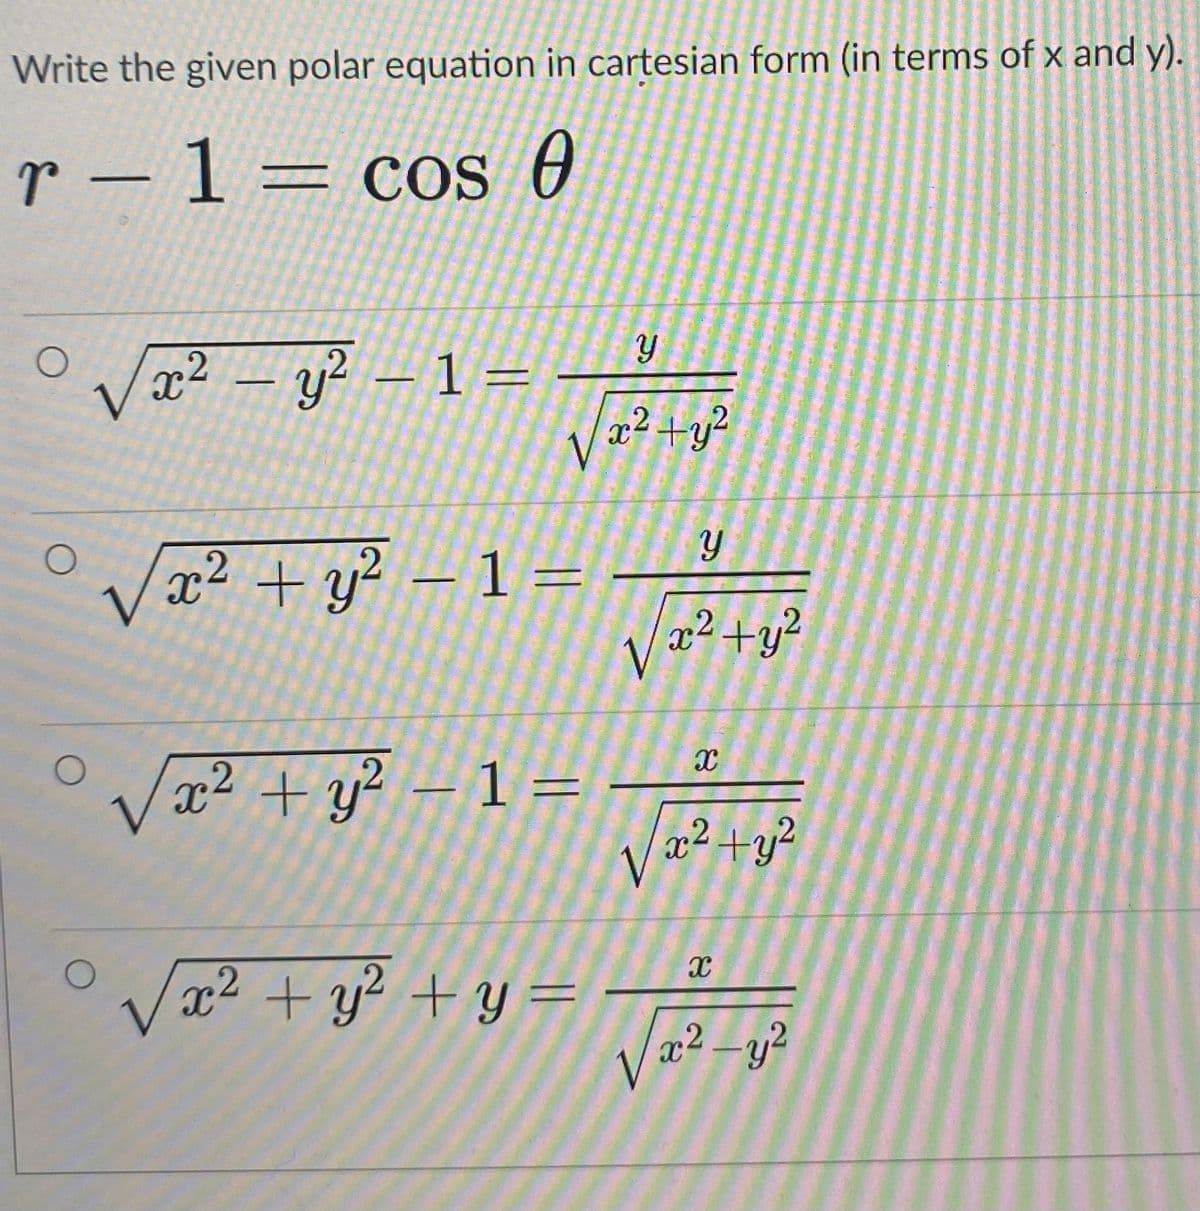 Write the given polar equation in cartesian form (in terms of x and y).
r - 1= cos 0
Vx² – y² – 1=
x² +y?
/x² + y² – 1 =
2 +y?
/x² + y² – 1 =
Vx2 + y² + y =
x² -y?
